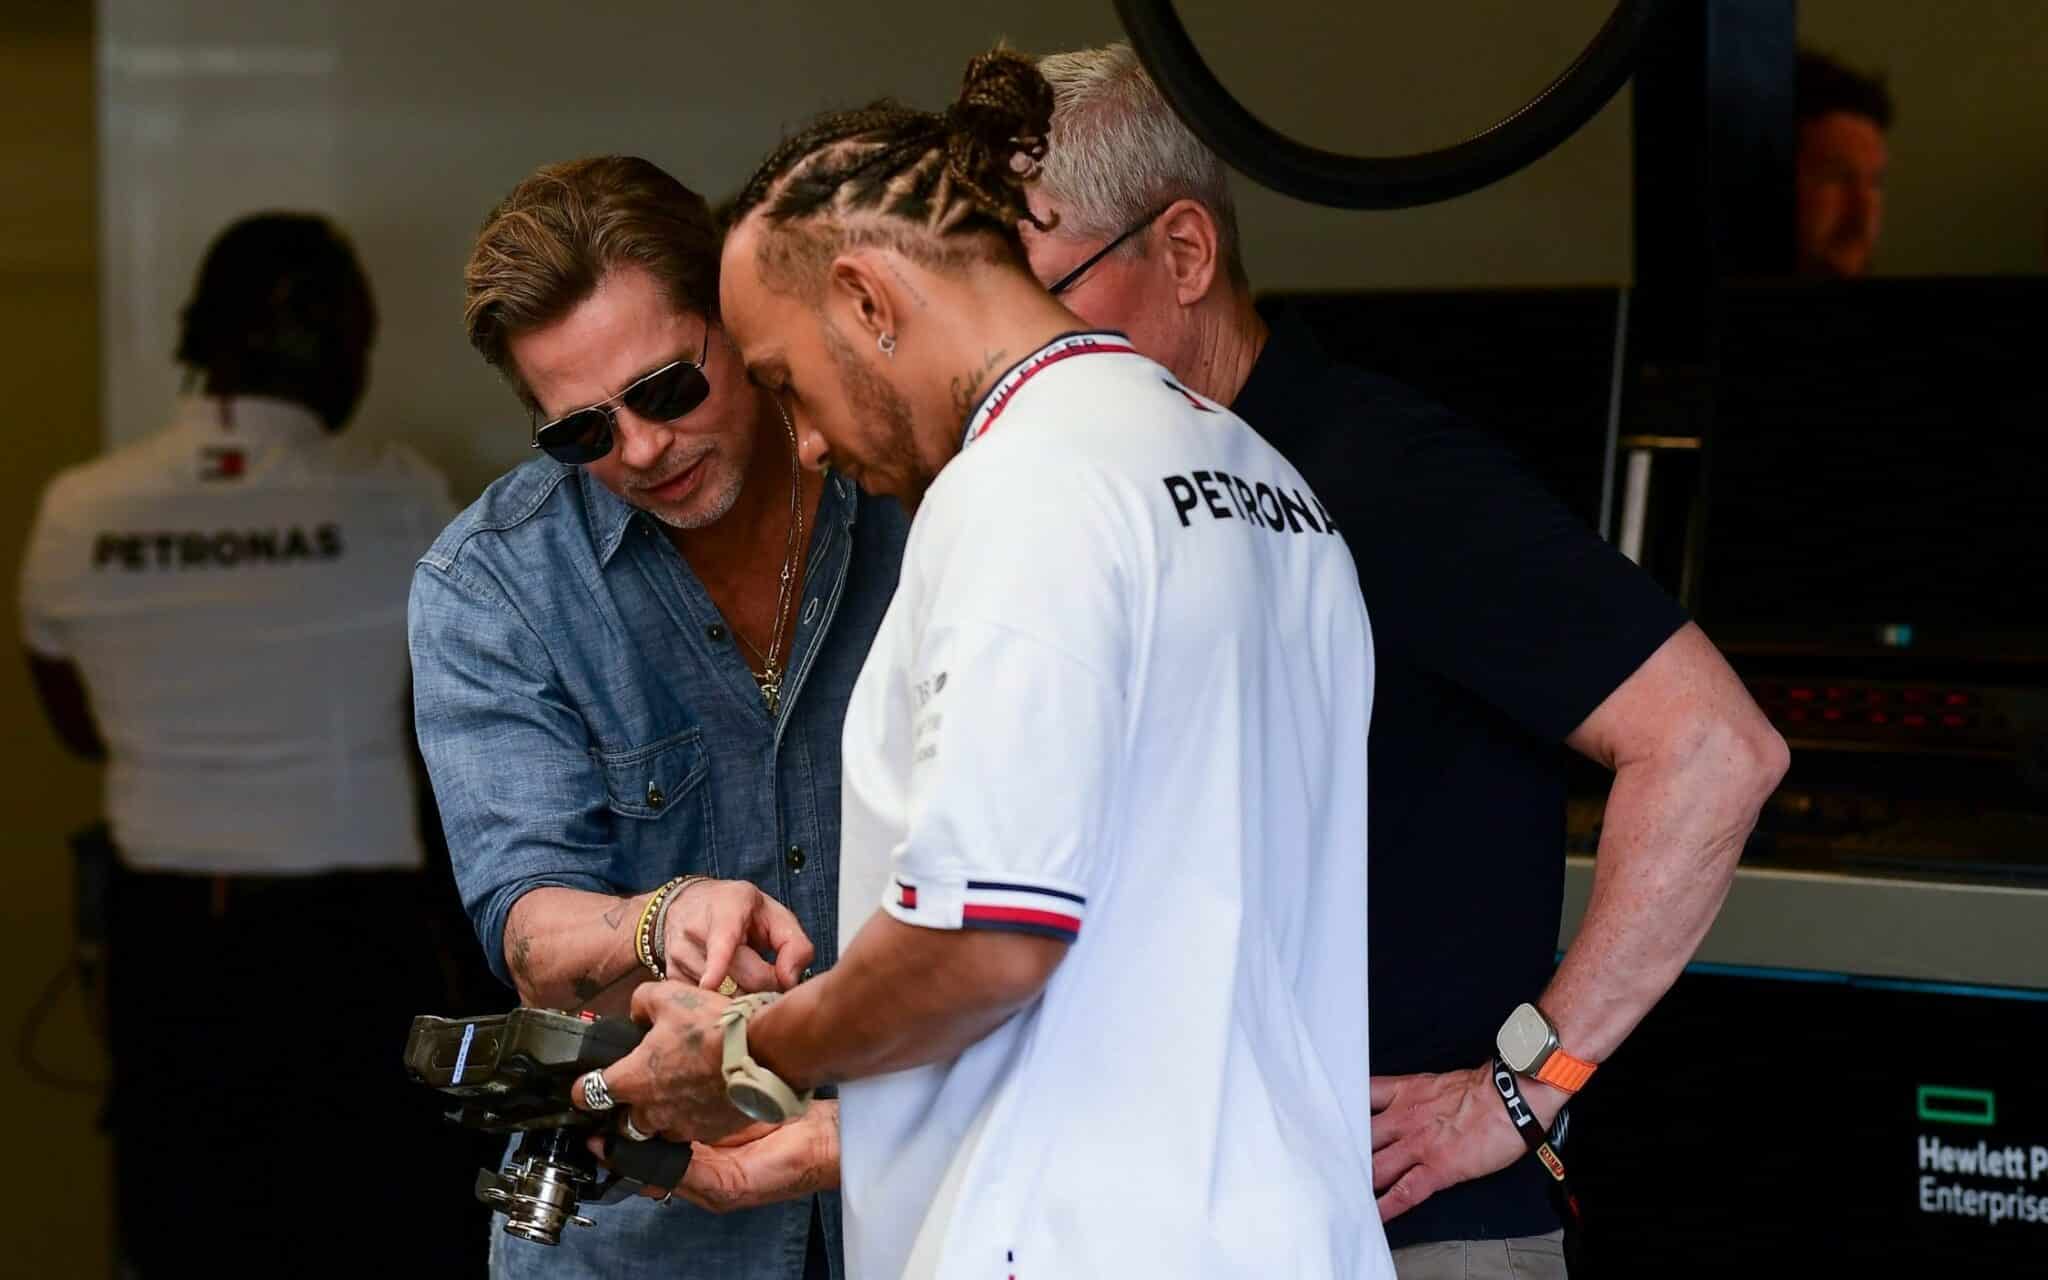 - Brad Pitt F1-Team wird "Apex" heißen, der Schauspieler trainiert in einem echten F2-Auto in Paul Ricard